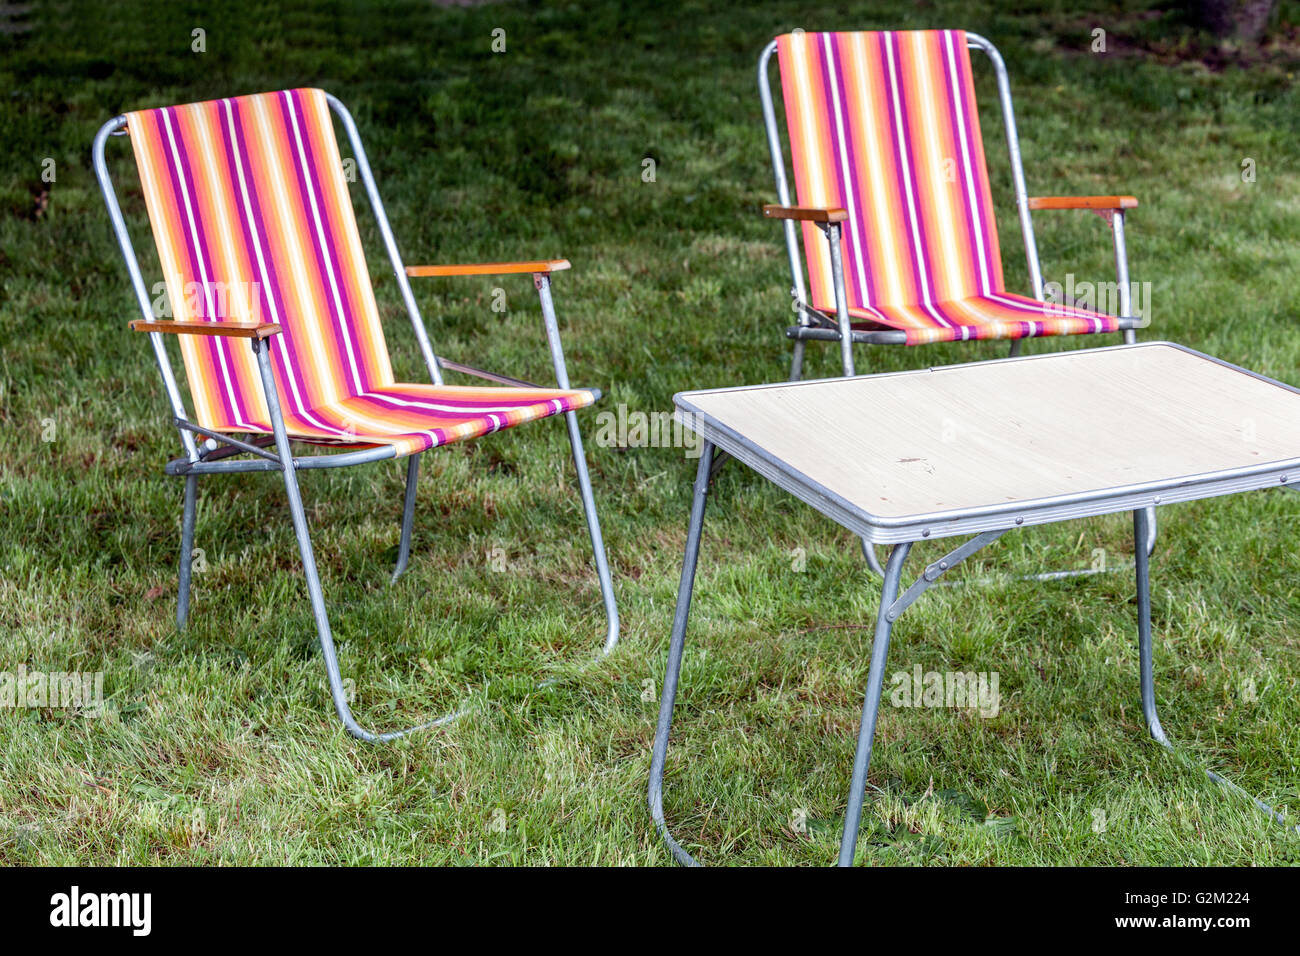 Camping sillas plegables en una pradera verde Foto de stock